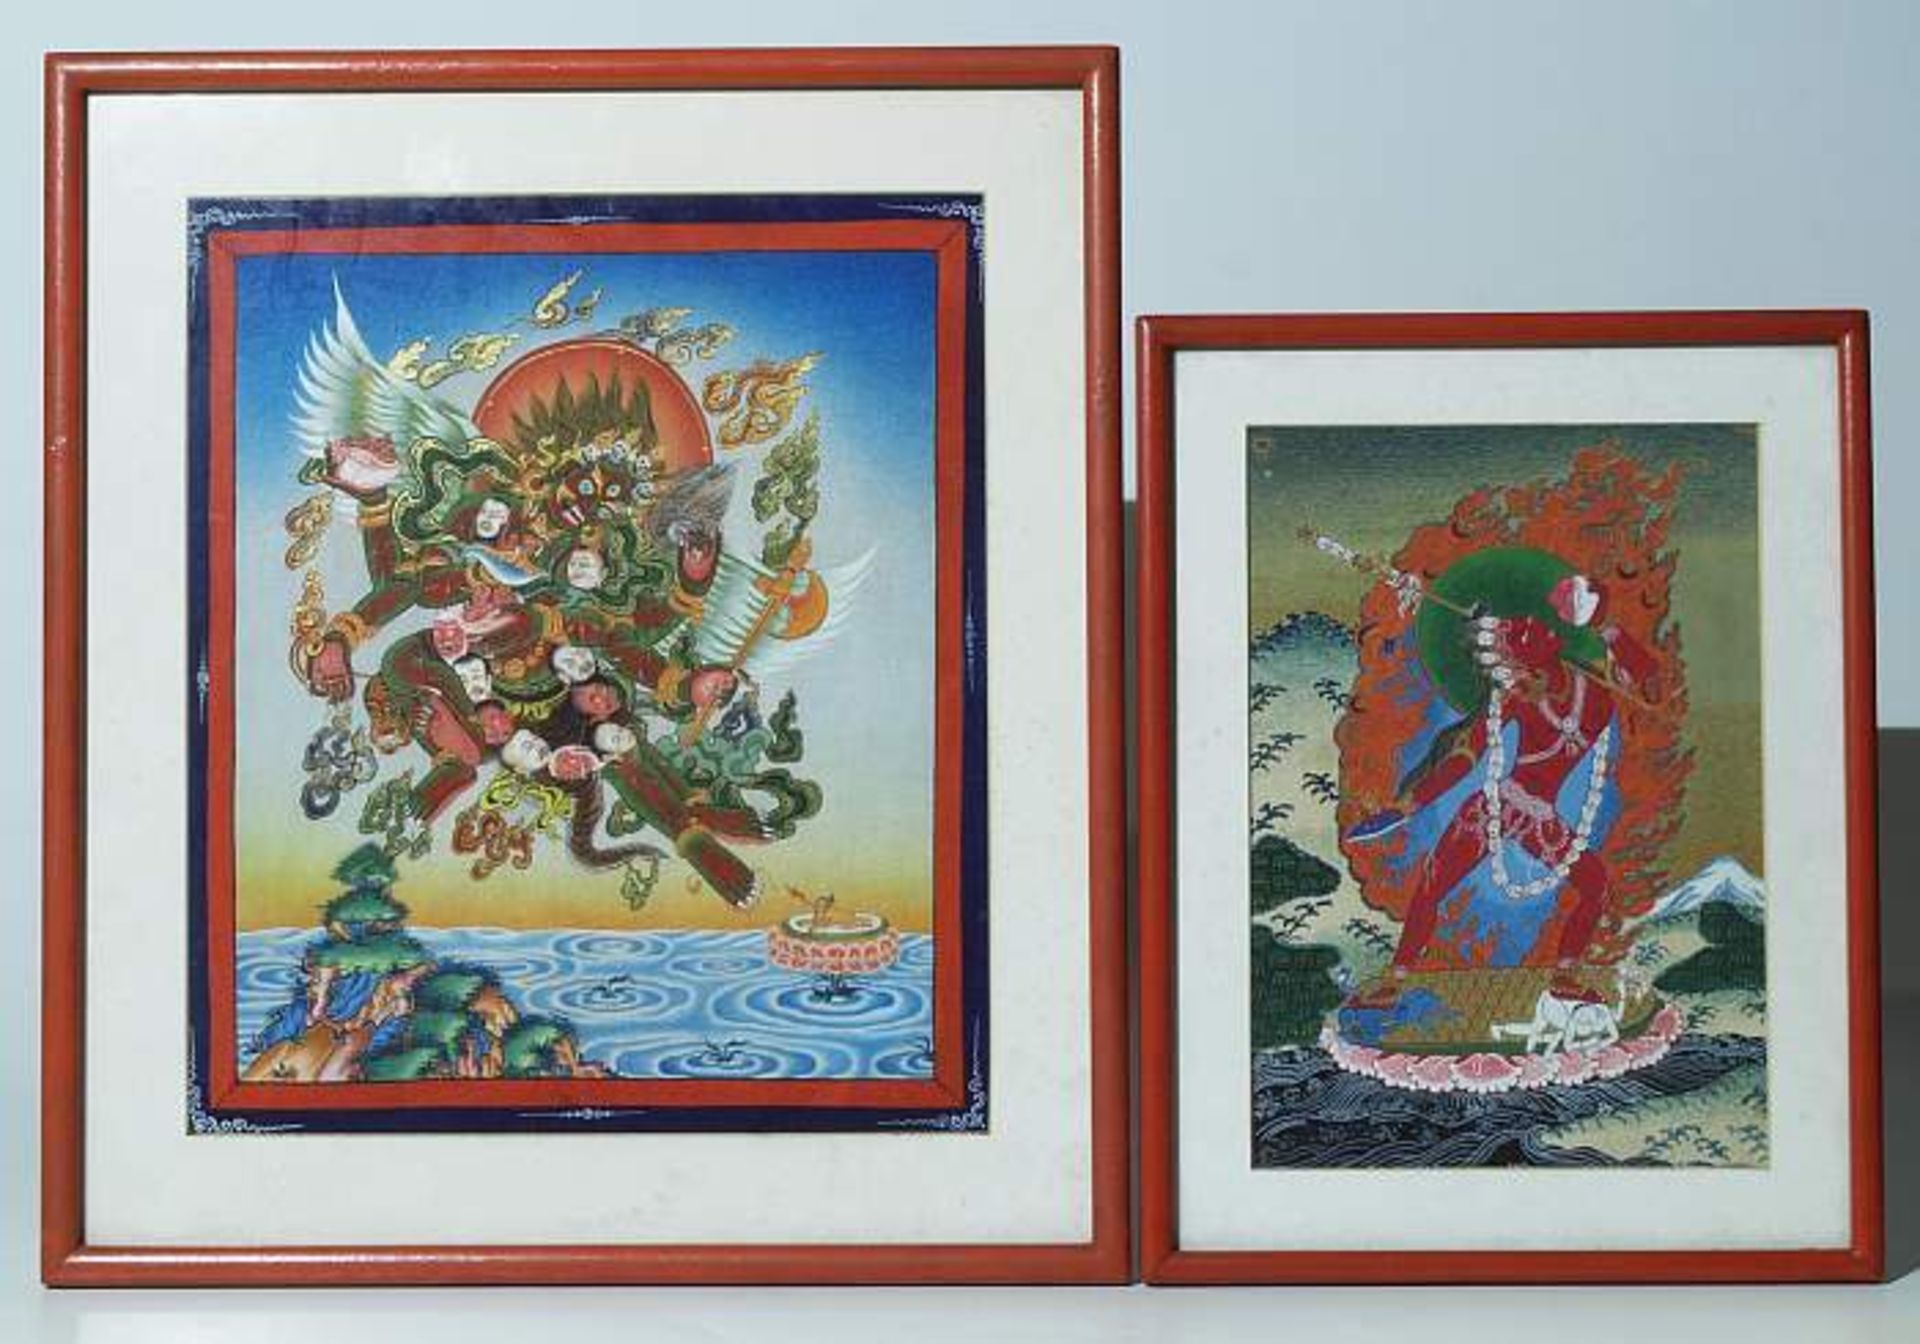 Zwei Tangka-Bilder.
Zwei Tangka-Bilder. 19./20. Jh. Tibet/ Mongolei. 1) Weibliche Gottheit Dakini